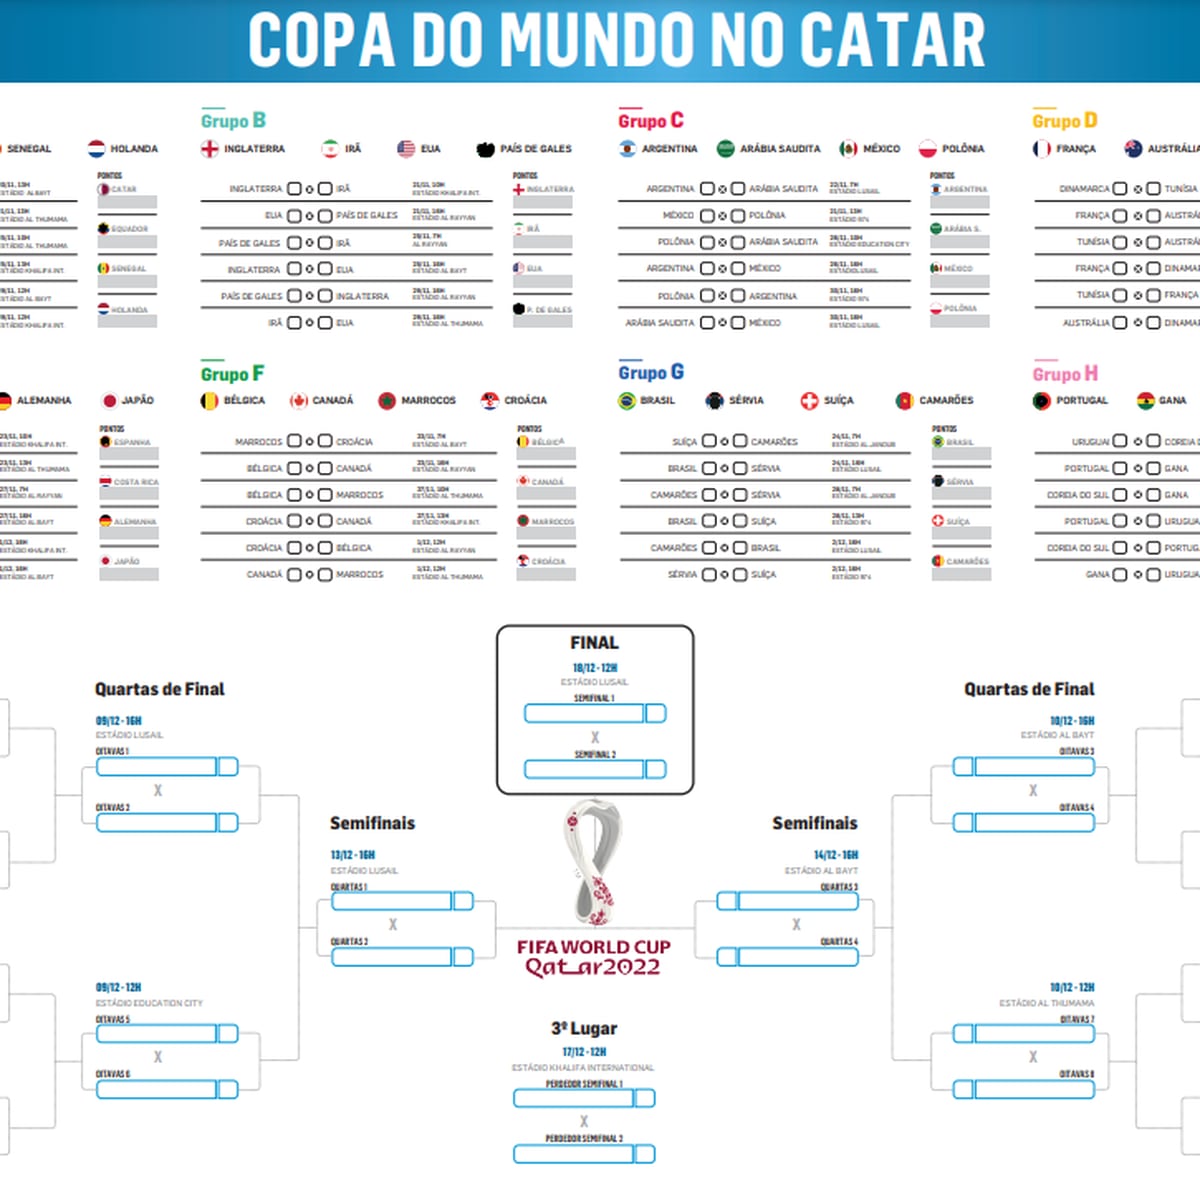 Copa 2022 - Tabela da Copa do Mundo FIFA 2022